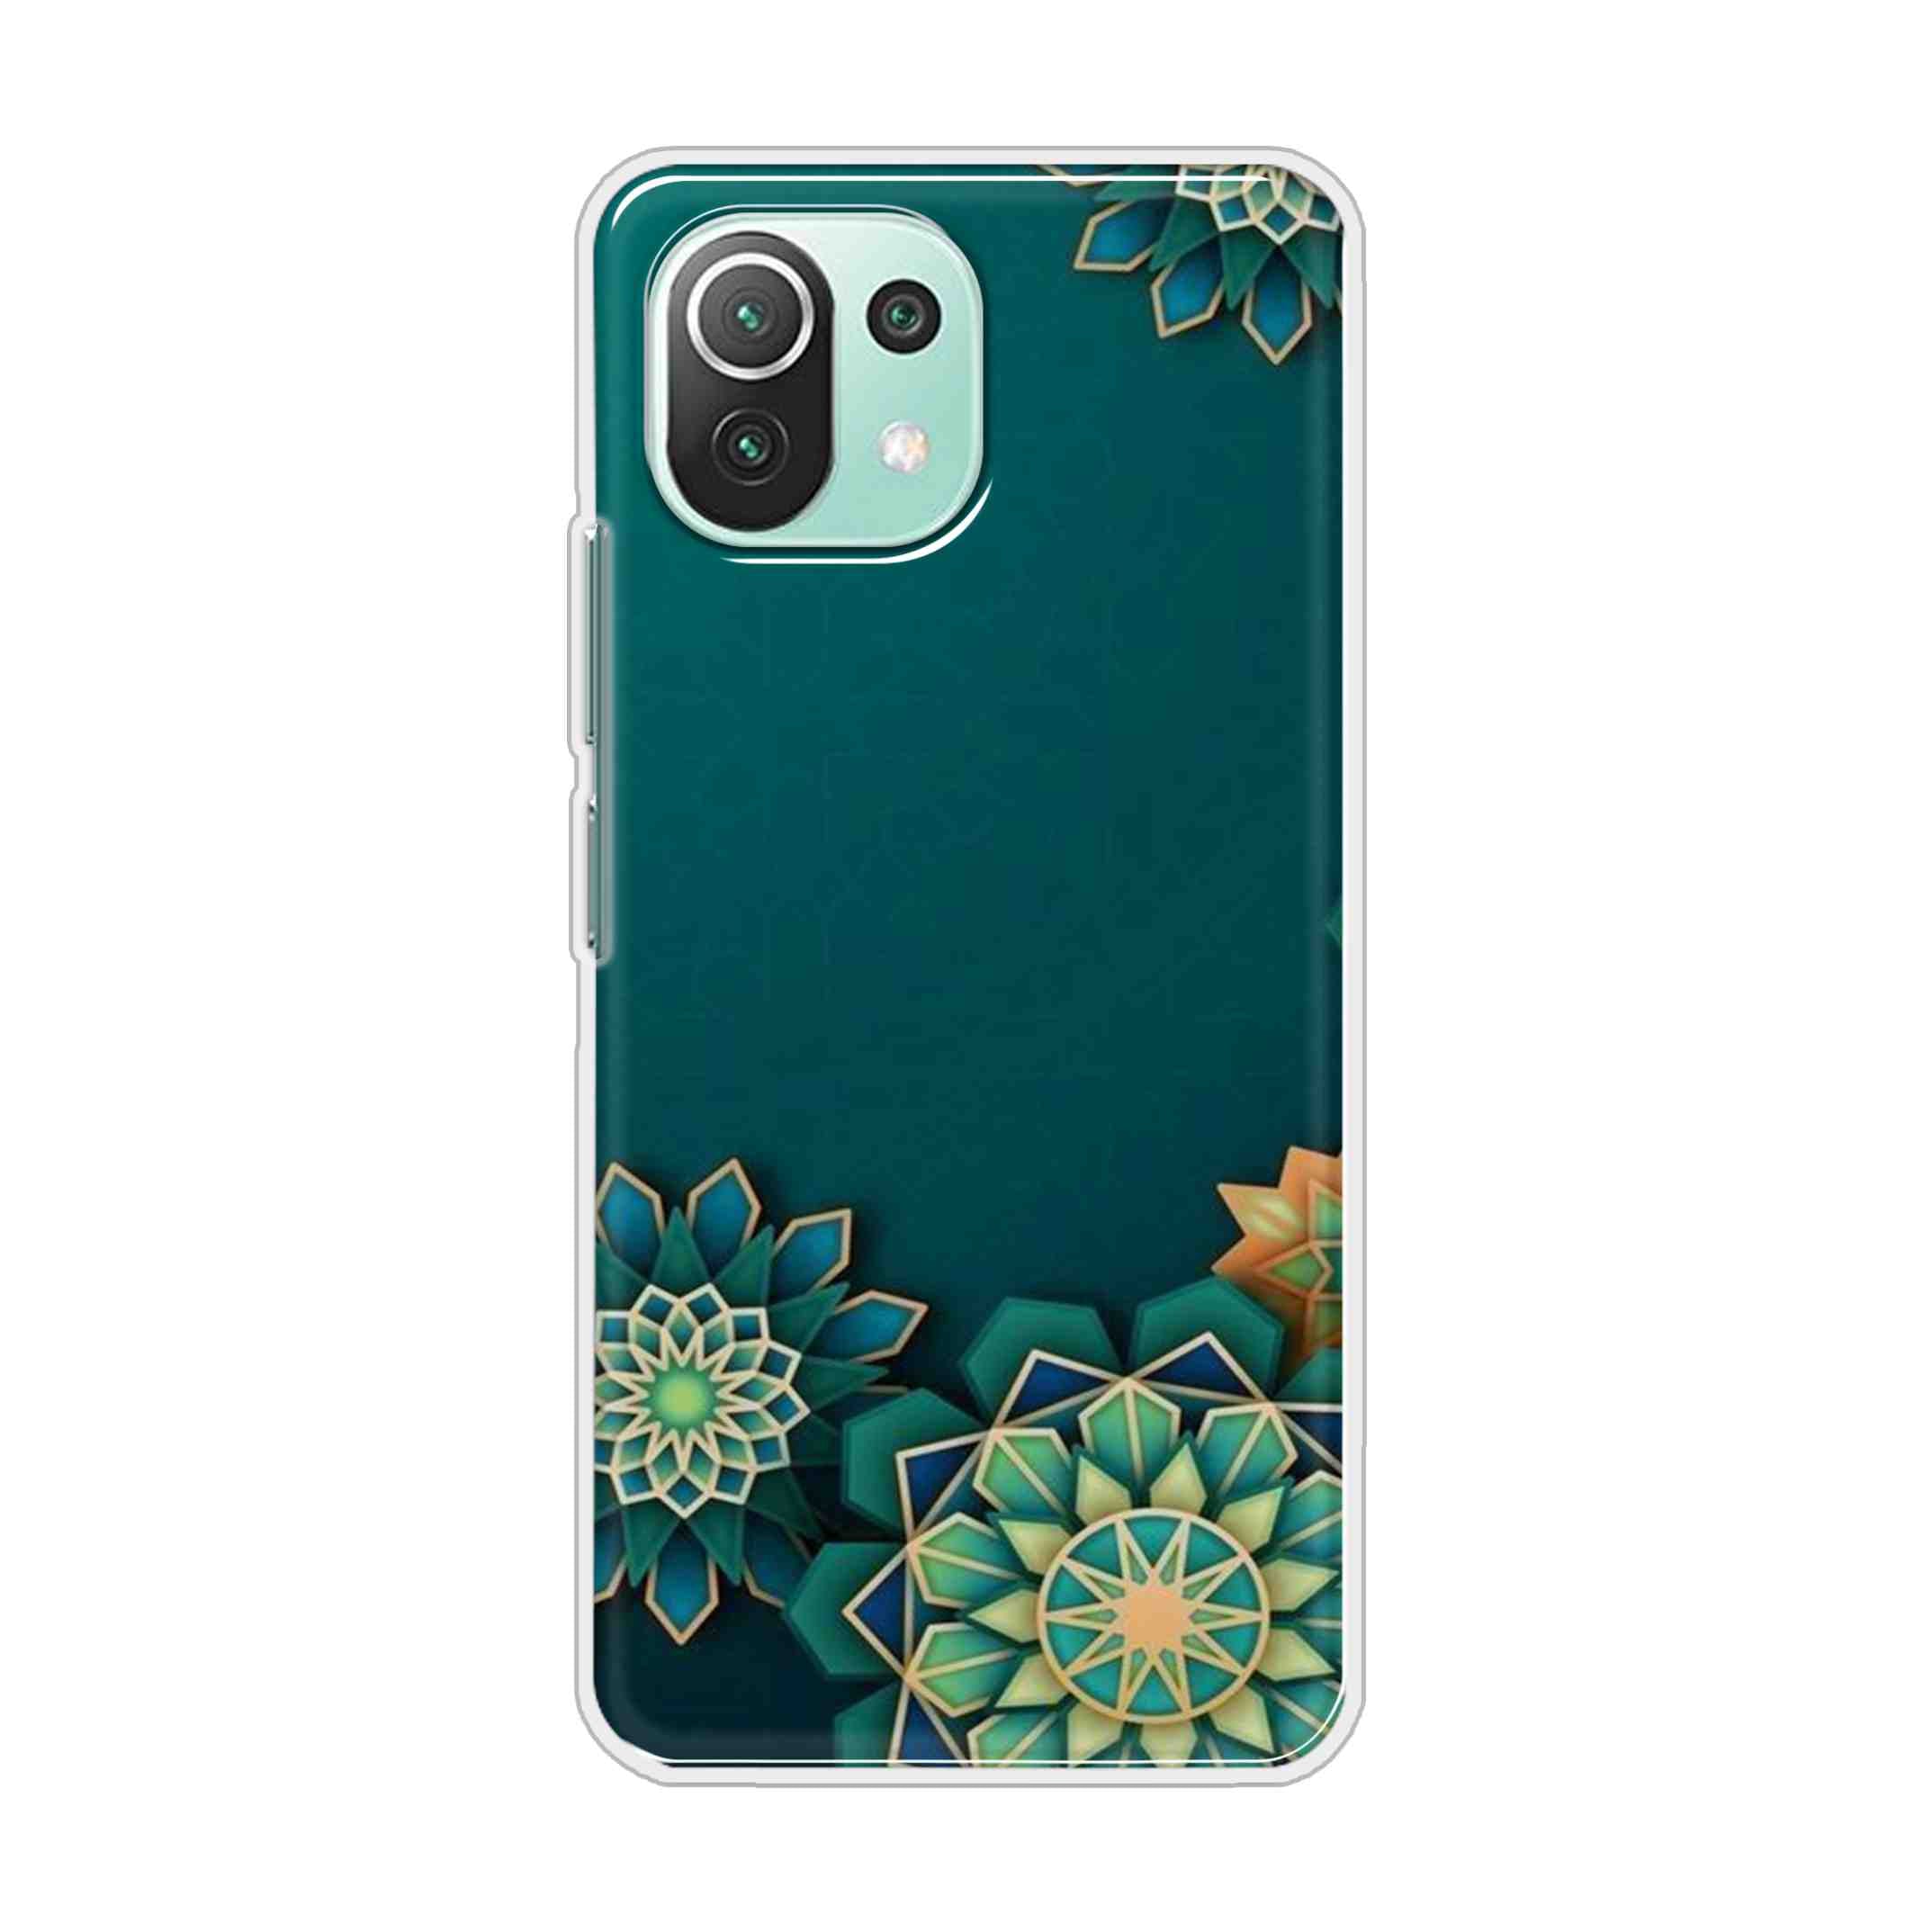 Buy Green Flower Hard Back Mobile Phone Case Cover For Mi 11 Lite 5G Online